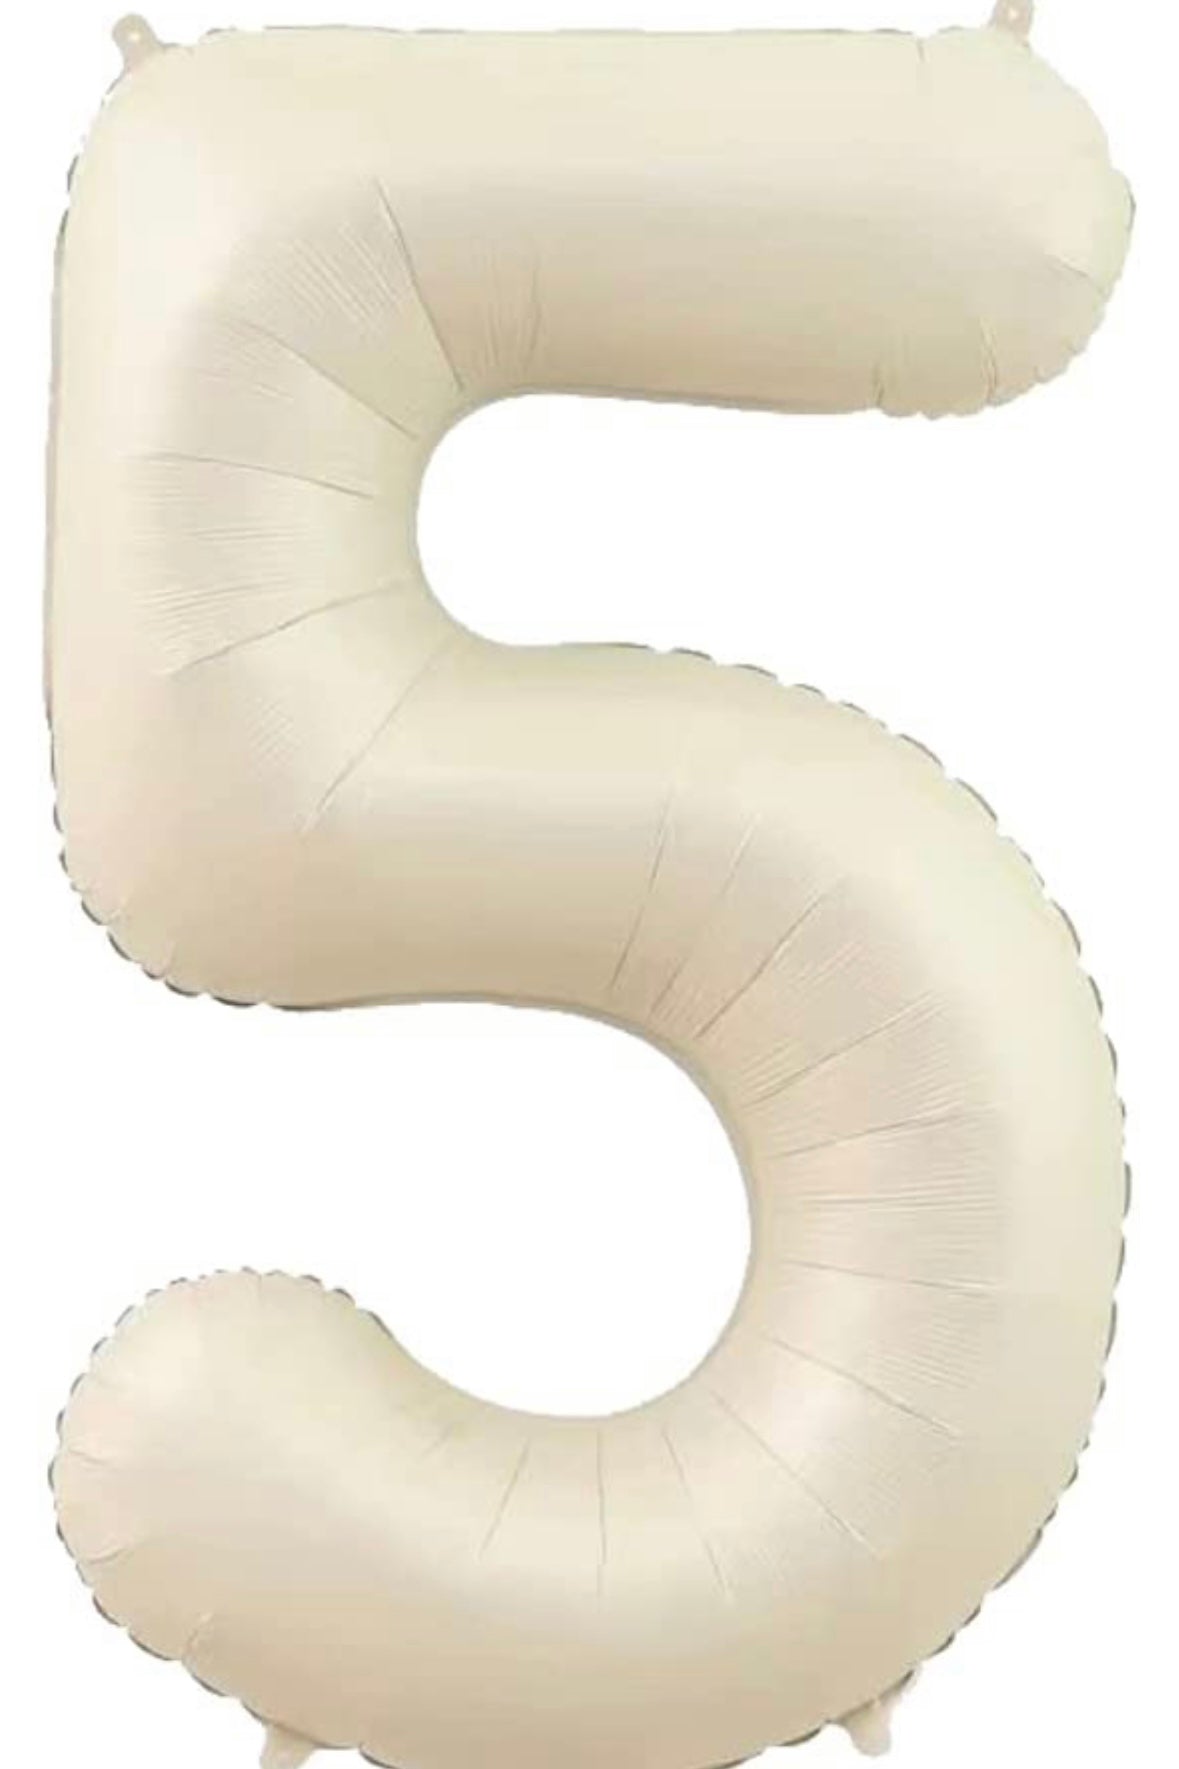 【number shape90cm】Ivory